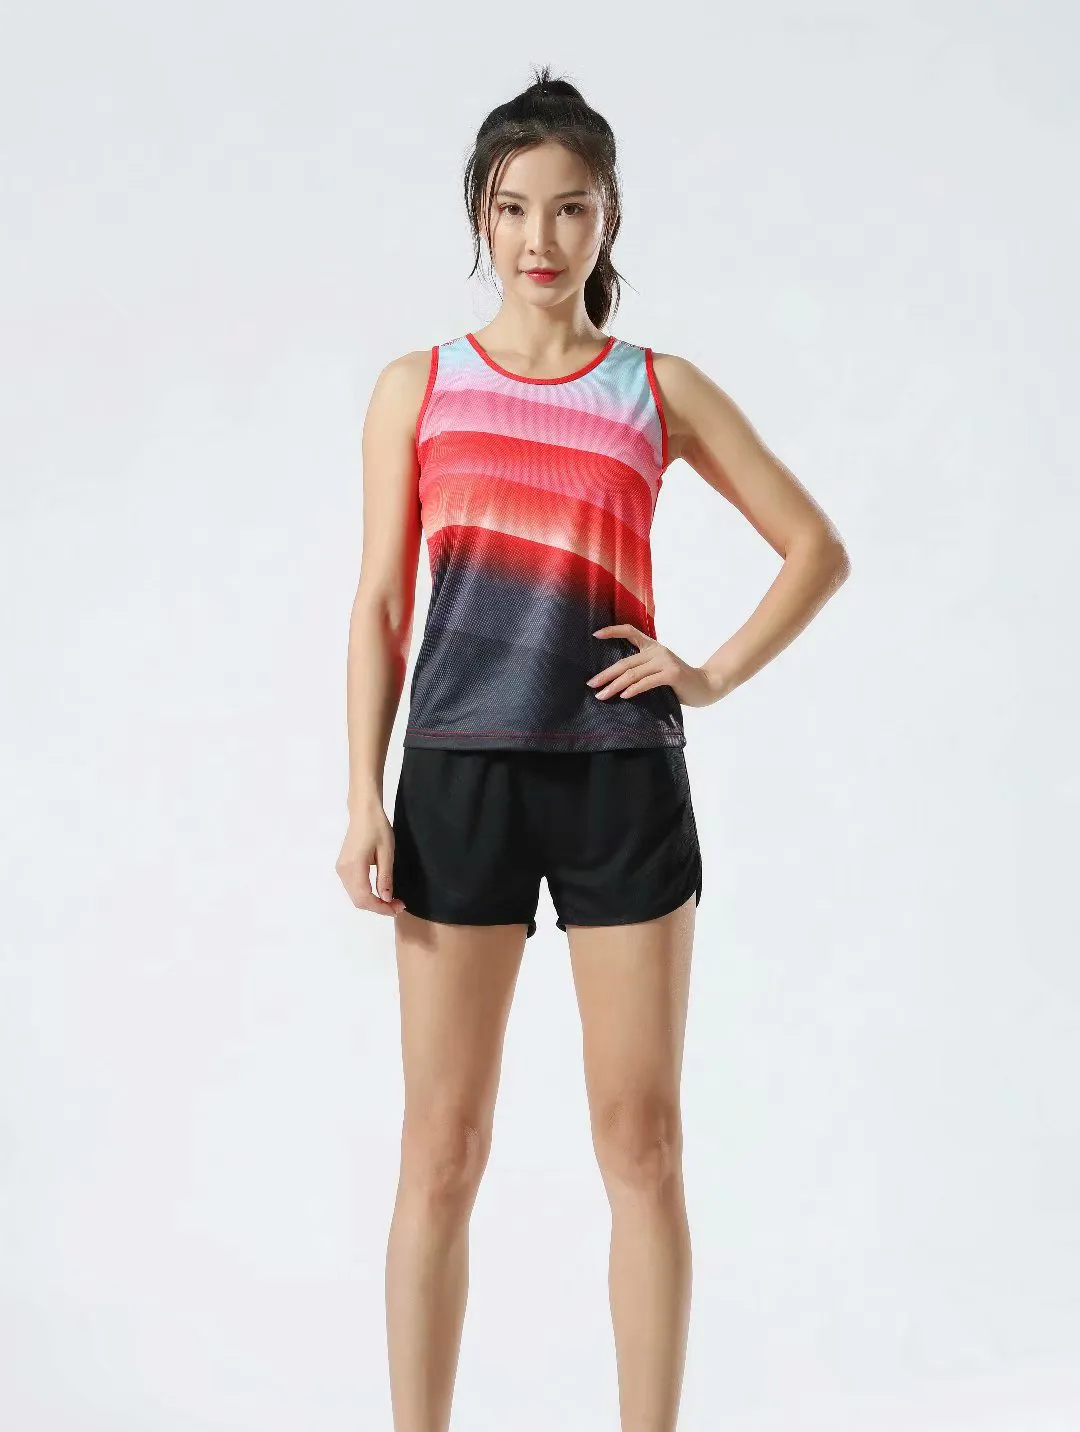 # 110 Erkekler Kadınlar Yelek + Şort Yarışması Koşu Setleri Parça ve Alan Spor Sprint Runları Uygun Erkek Kadın Maraton Giysi Kitleri